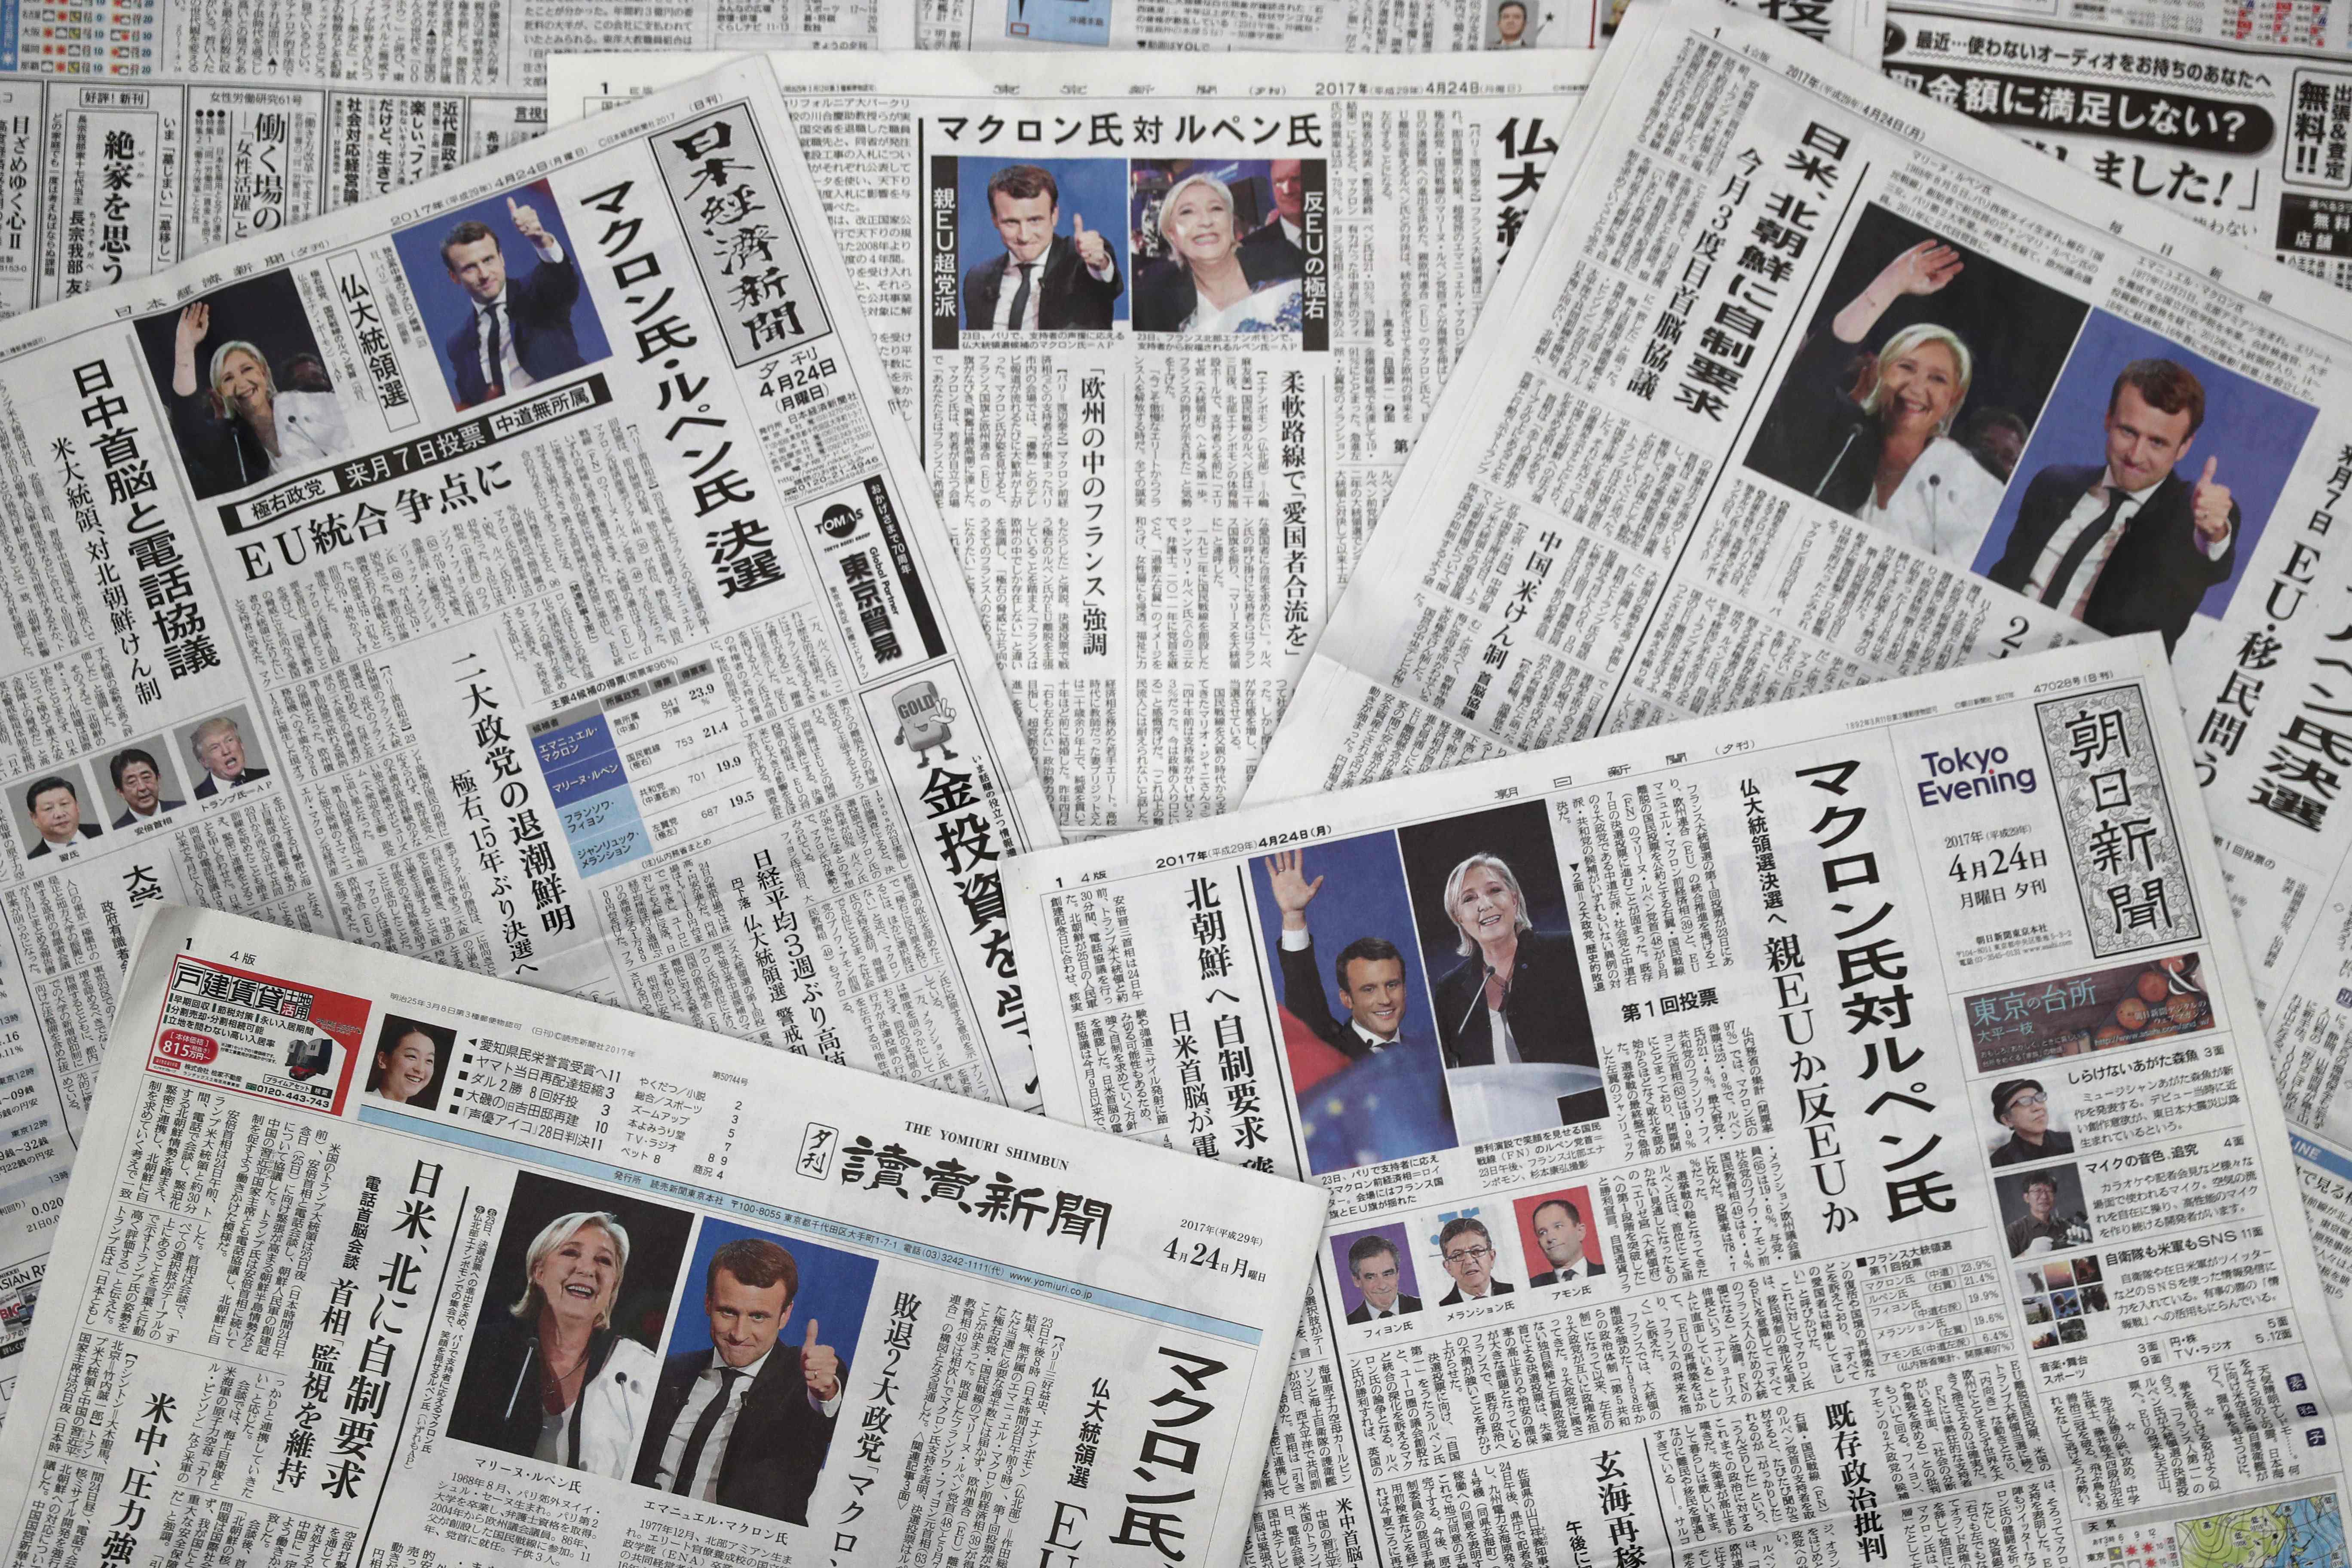 أخبار انتخابات الرئاسة الفرنسية فى الصحف اليابانية